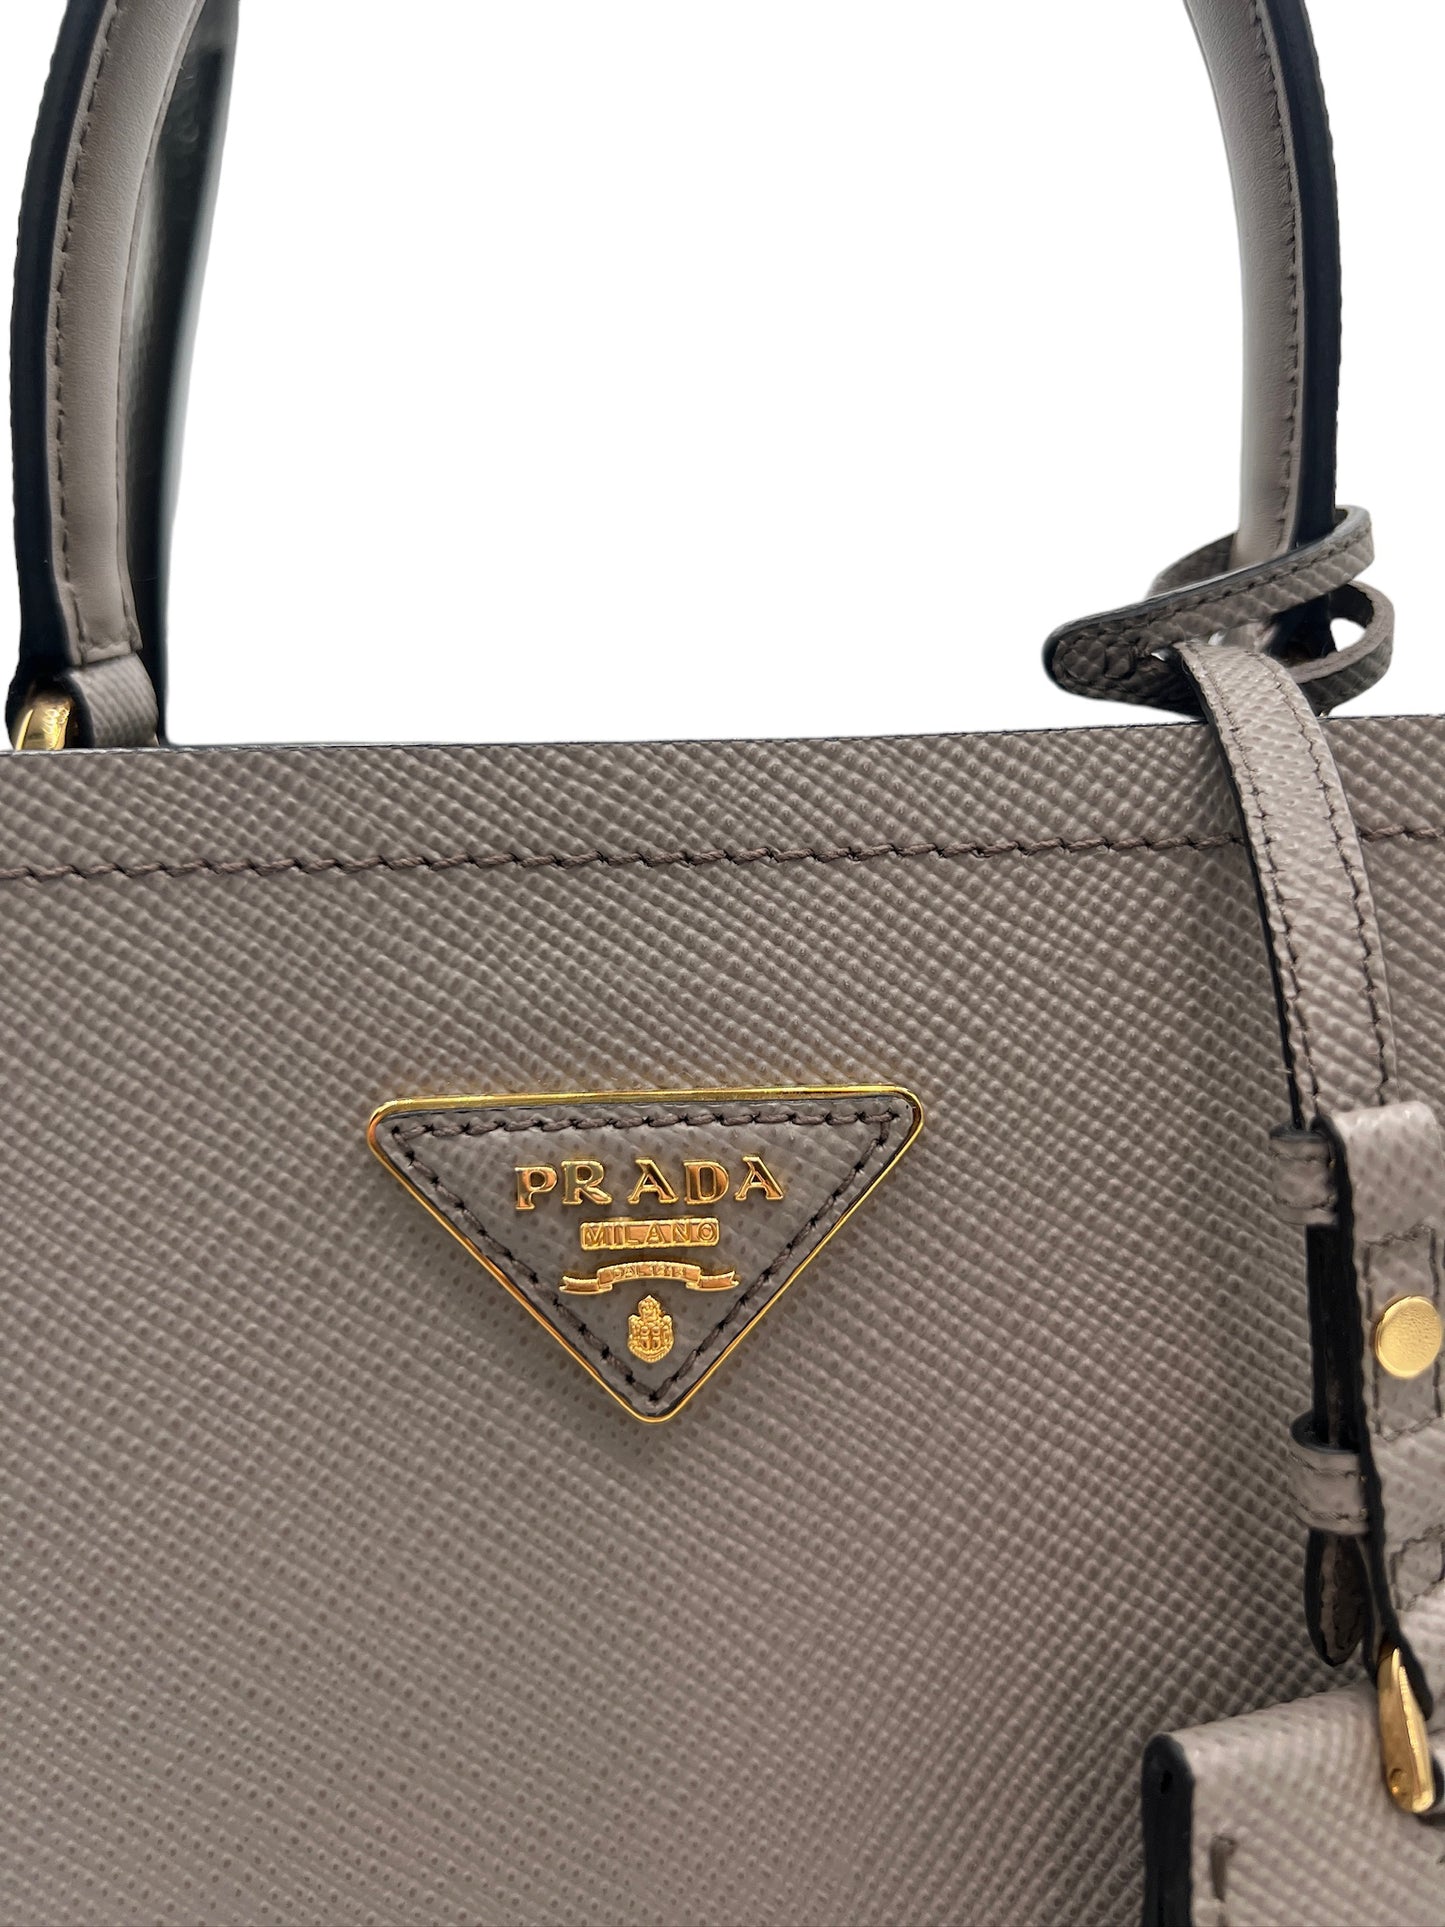 PRADA - Panier Gray Saffiano Leather Handbag